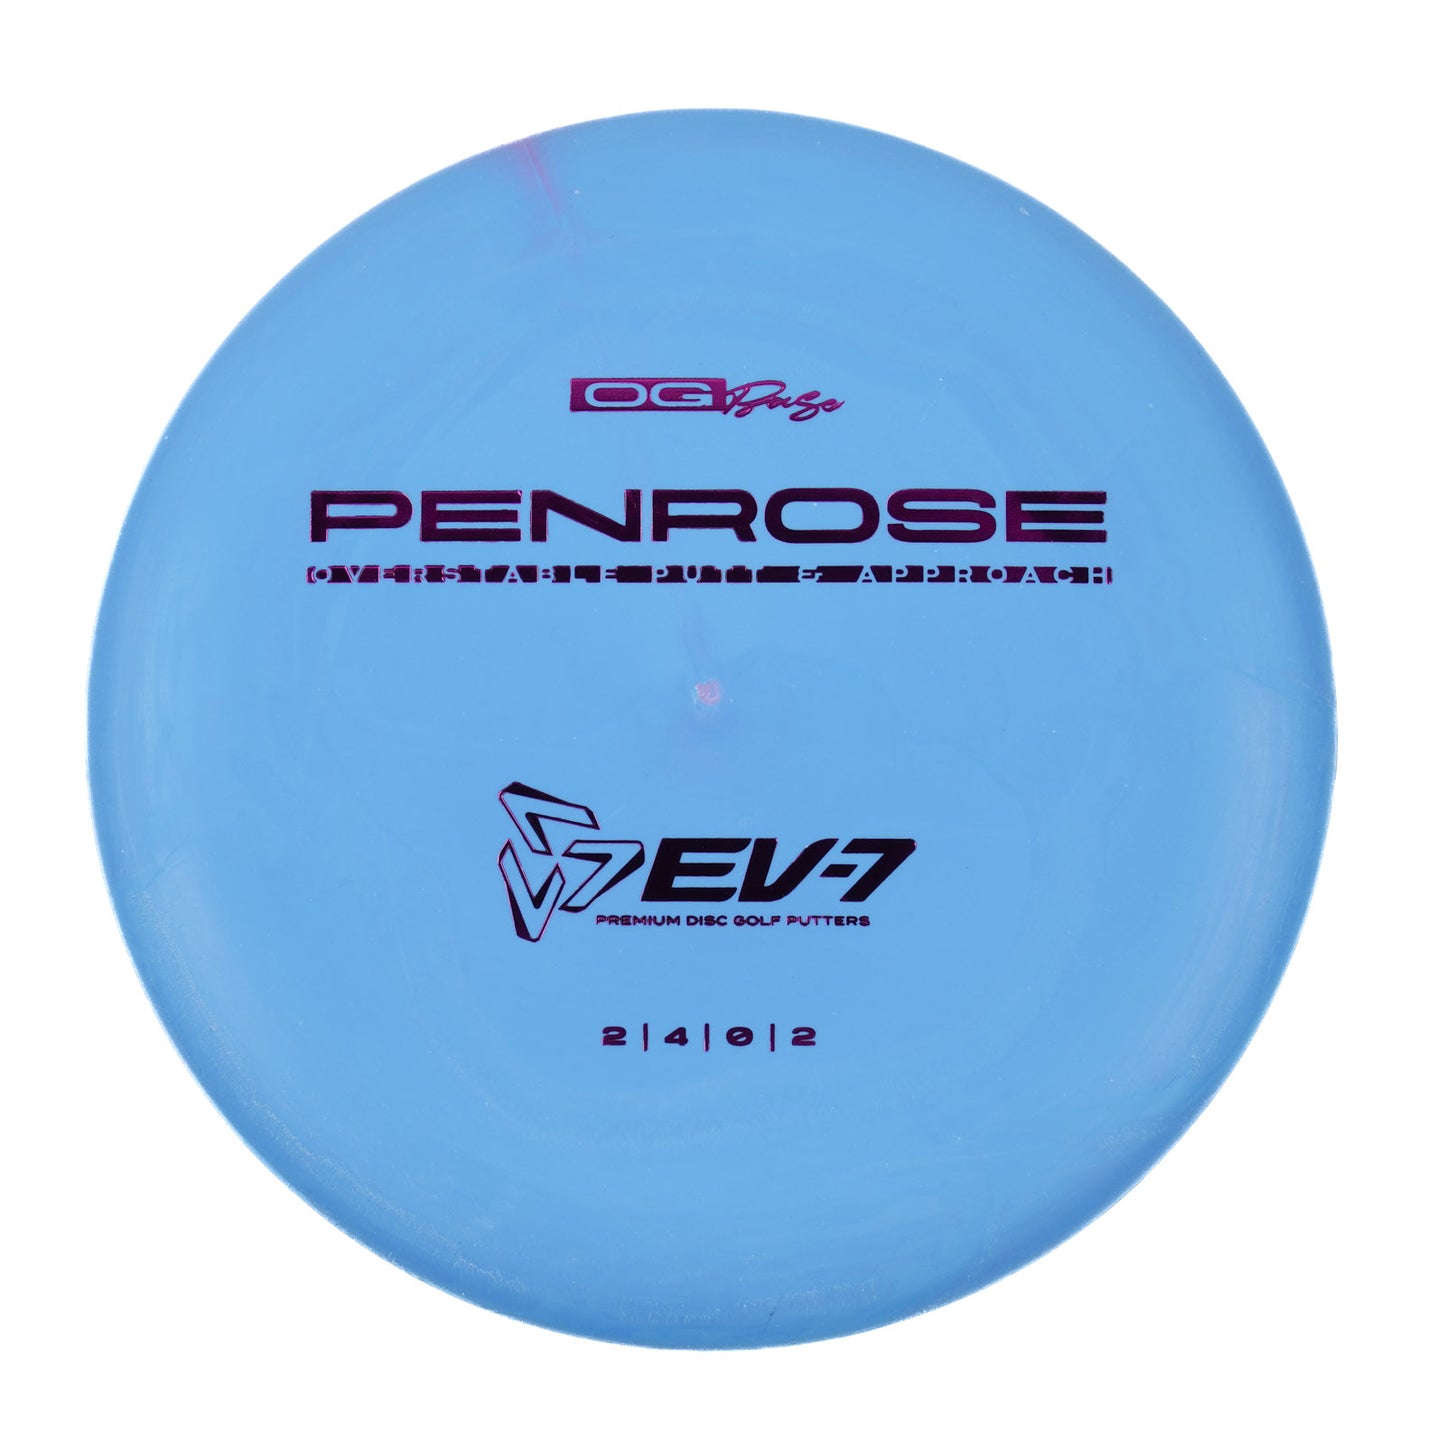 EV-7 Penrose - OG 173g | Style 0007